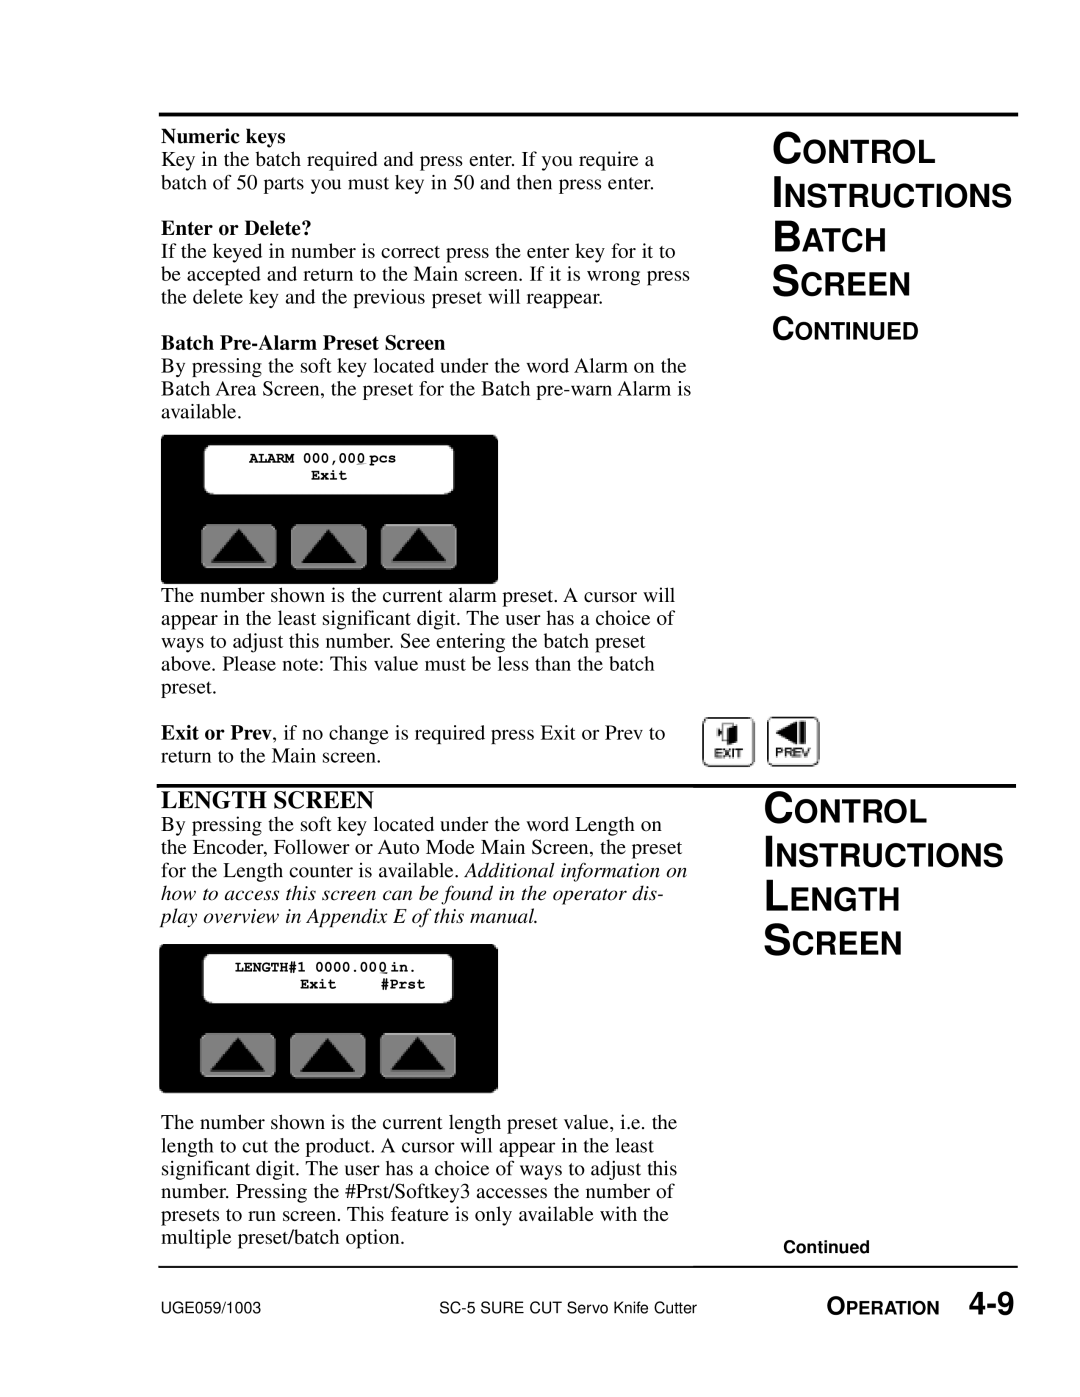 Conair SC-5 manual Control Instructions Length Screen, Enter or Delete?, Batch Pre-Alarm Preset Screen, ALARM000,00Exit0pcs 